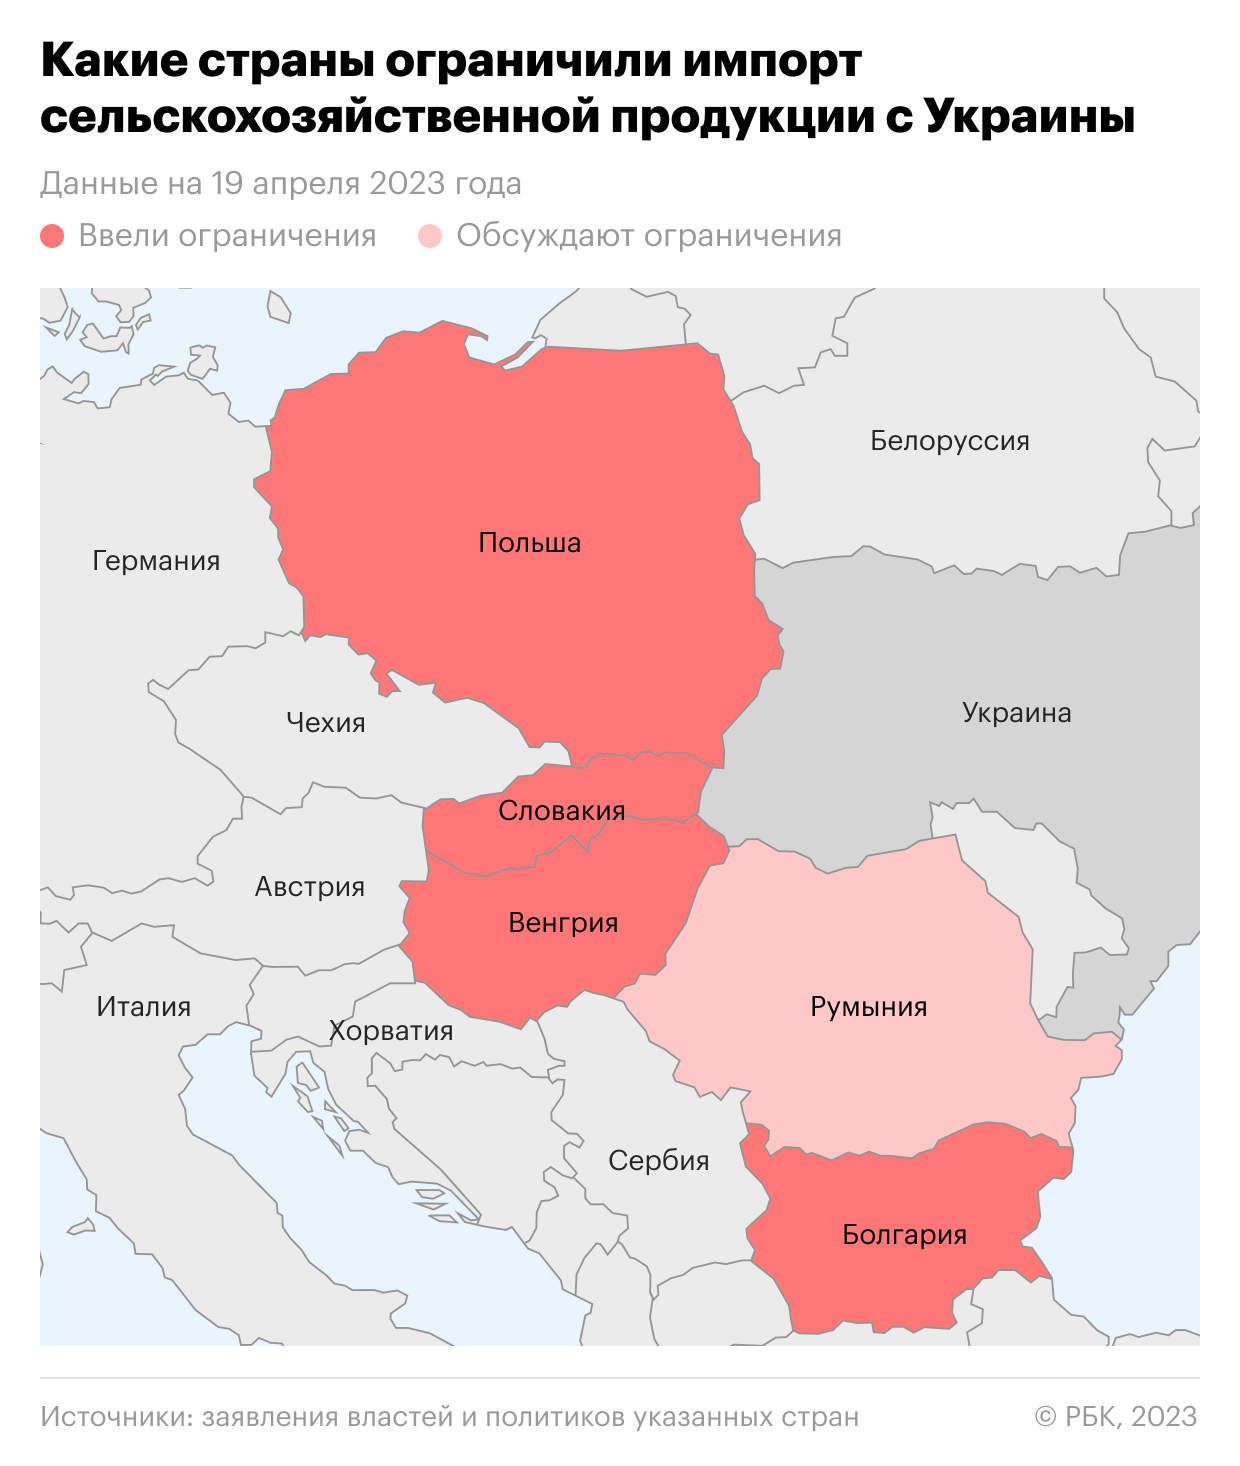 Польша какая республика. Польша Румыния Венгрия и Украина. Украина территория Венгрии и Румынии. Польские и венгерские территории Украины. Территория Венгрии на Украине.